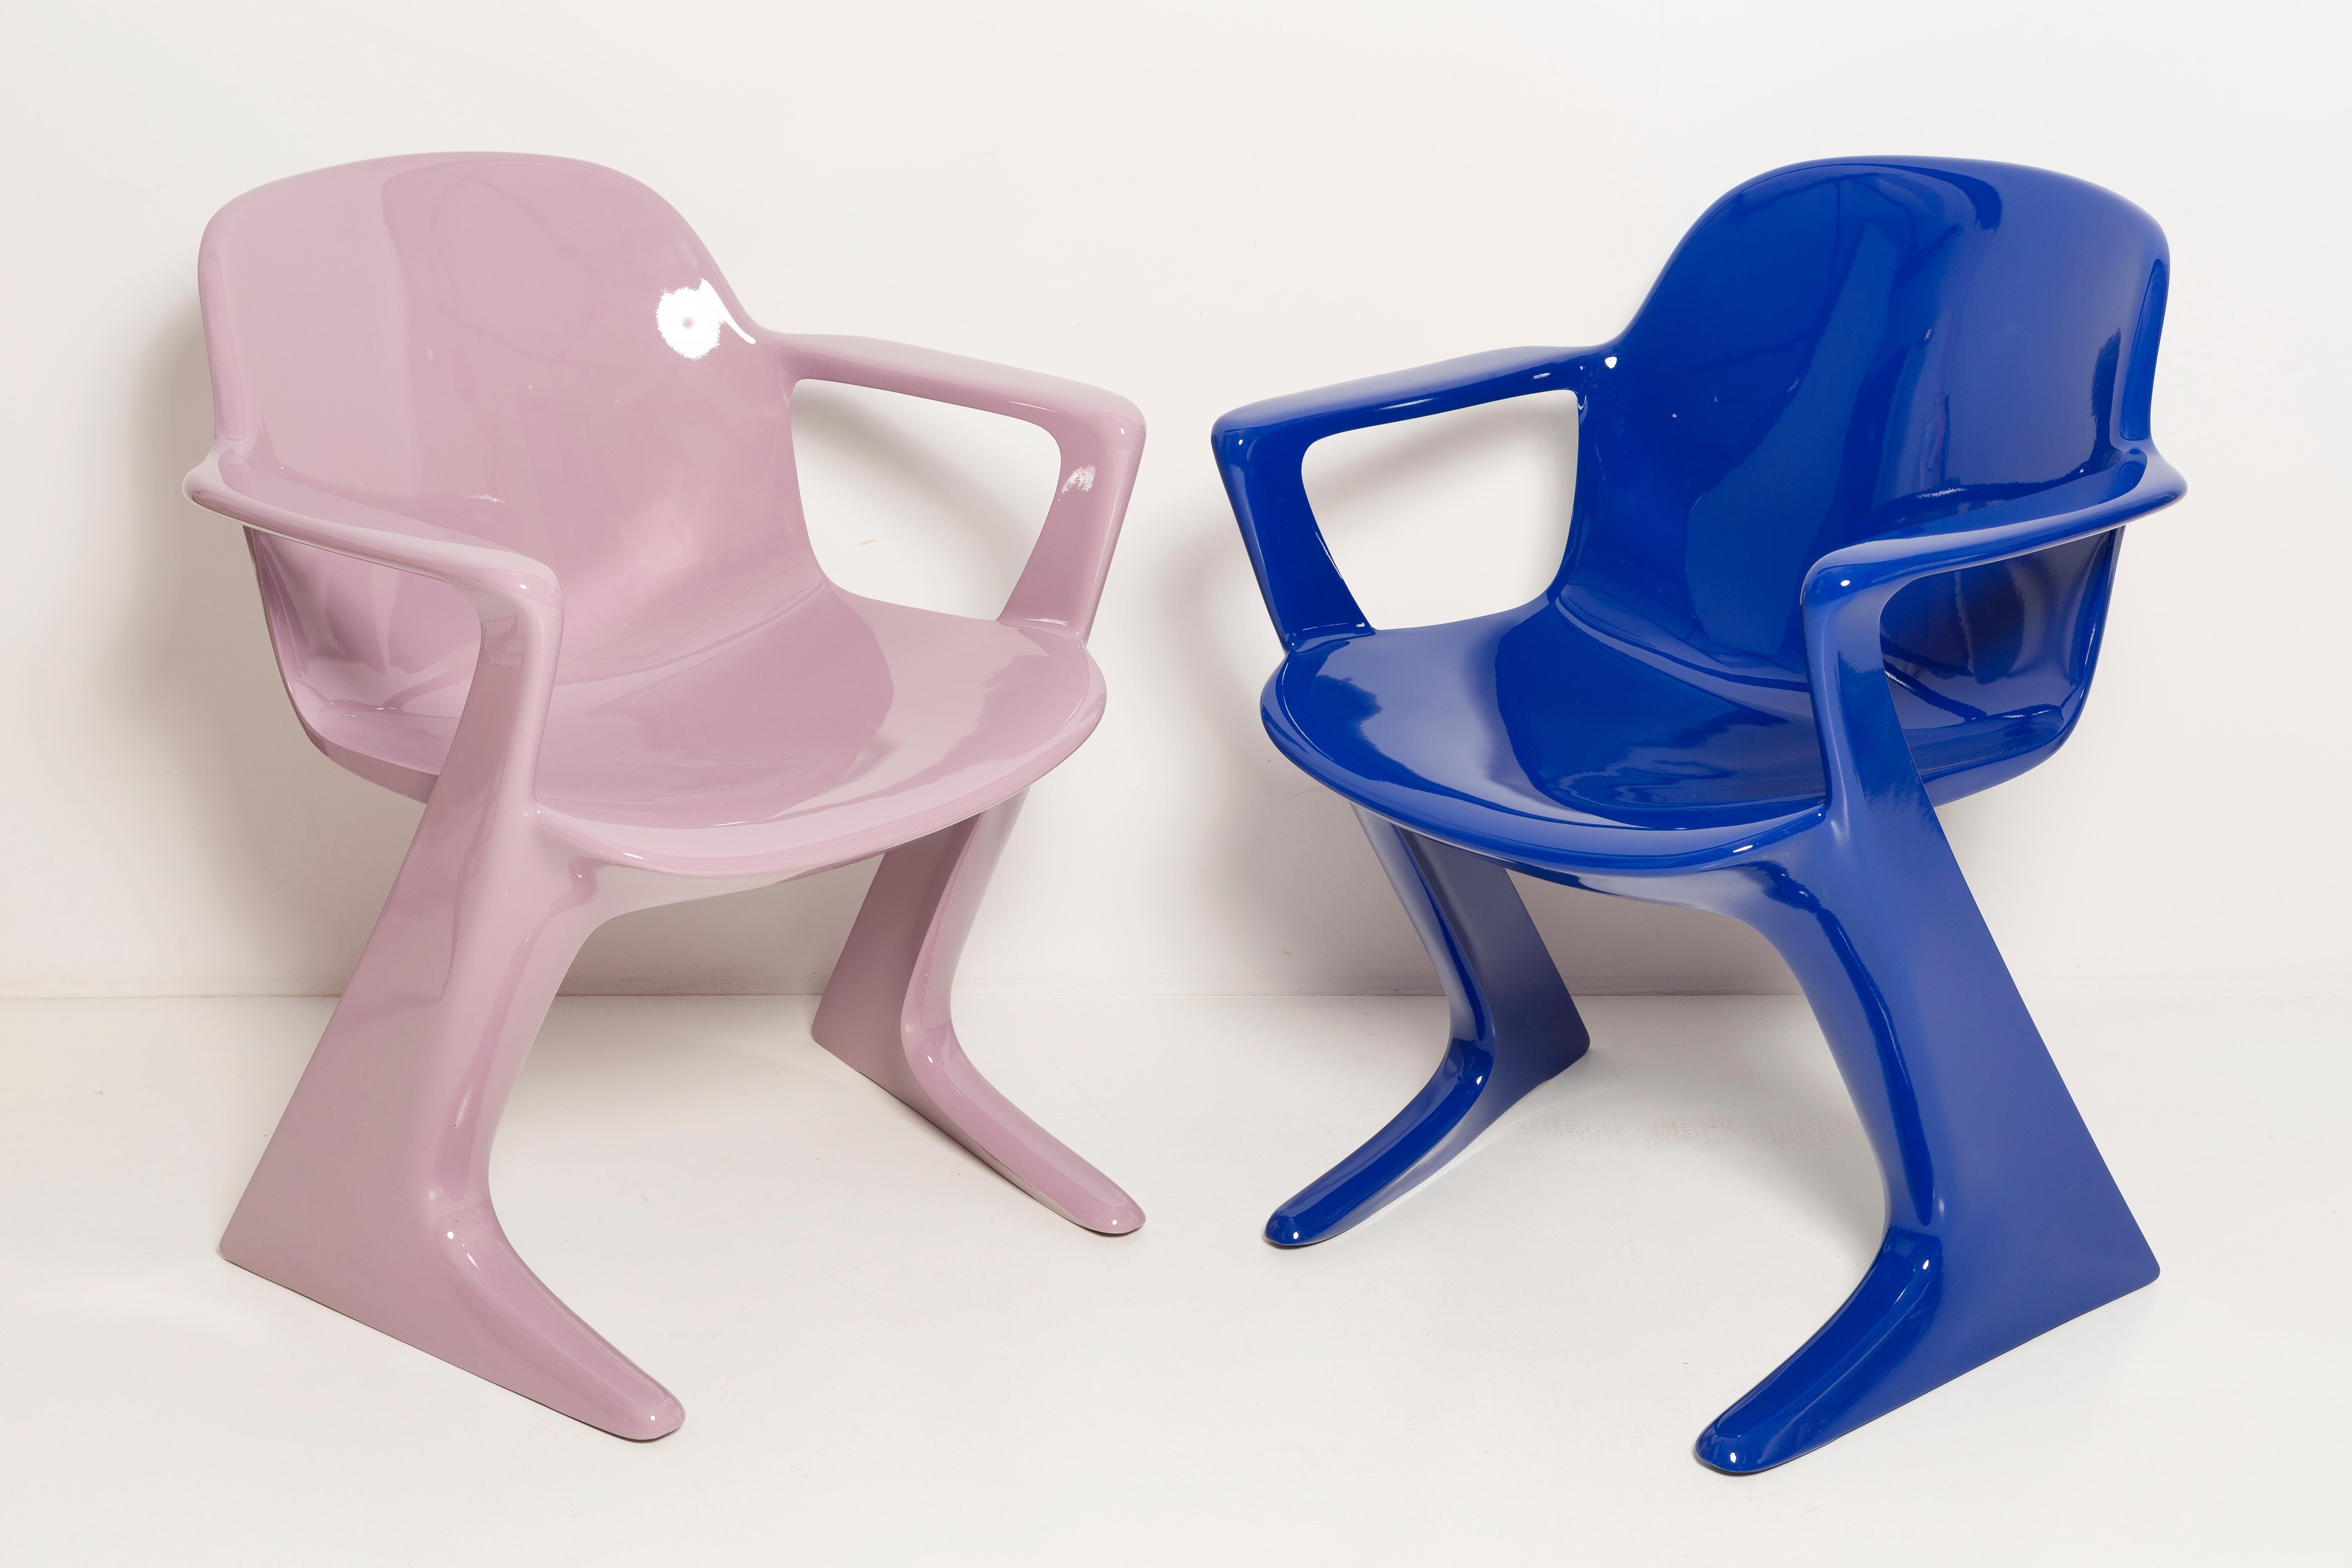 La chaise z.stuhl, conçue par Ernst Moeckl (1931-2013) dans les années 1970, est une chaise cantilever en polyuréthane, disponible avec ou sans accoudoirs. Dans le langage courant, la chaise est connue sous des noms liés à la géométrie tels que